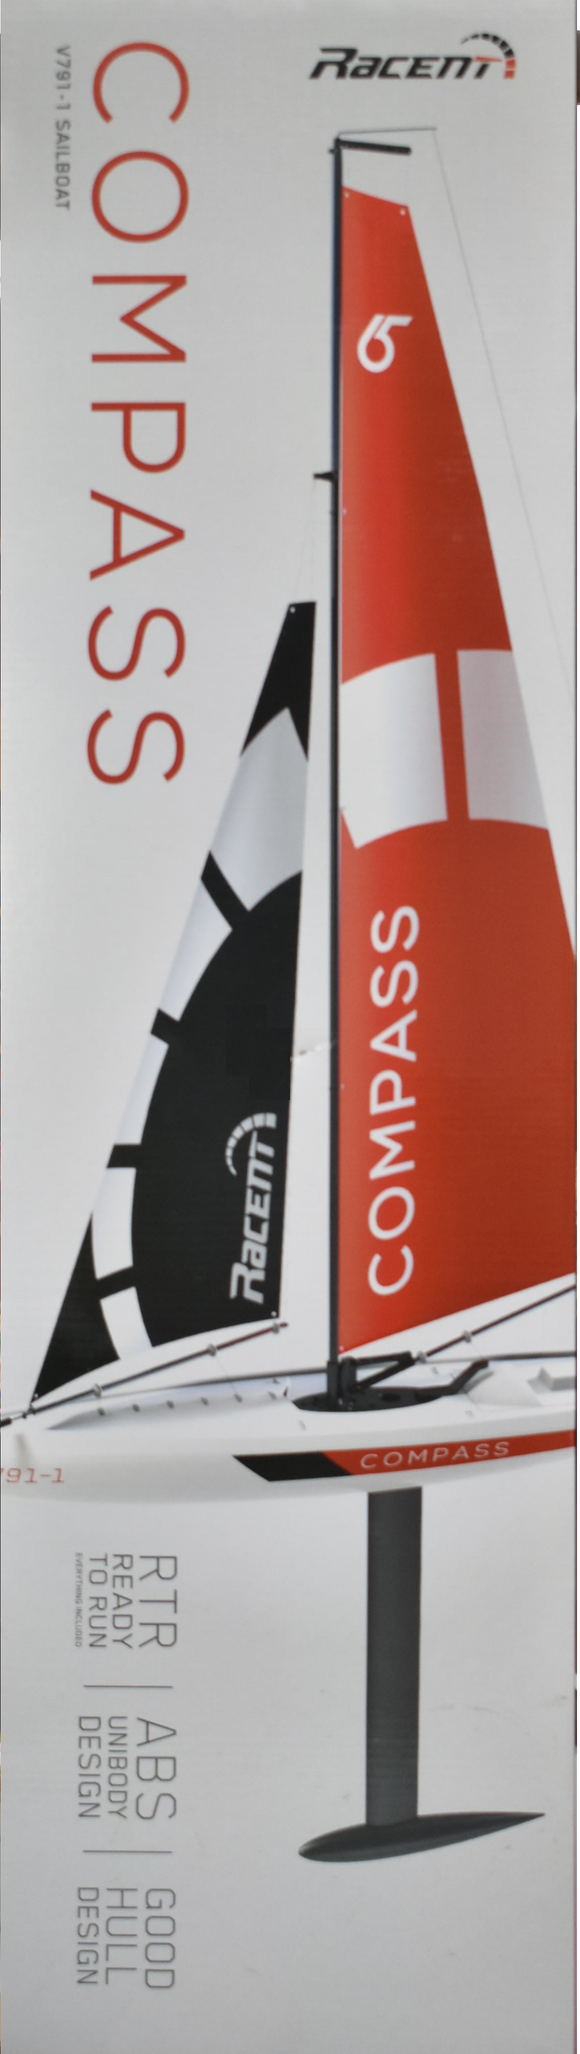 V791-1 Compass SailBoat  RTR | VOL79101 | Racent RC